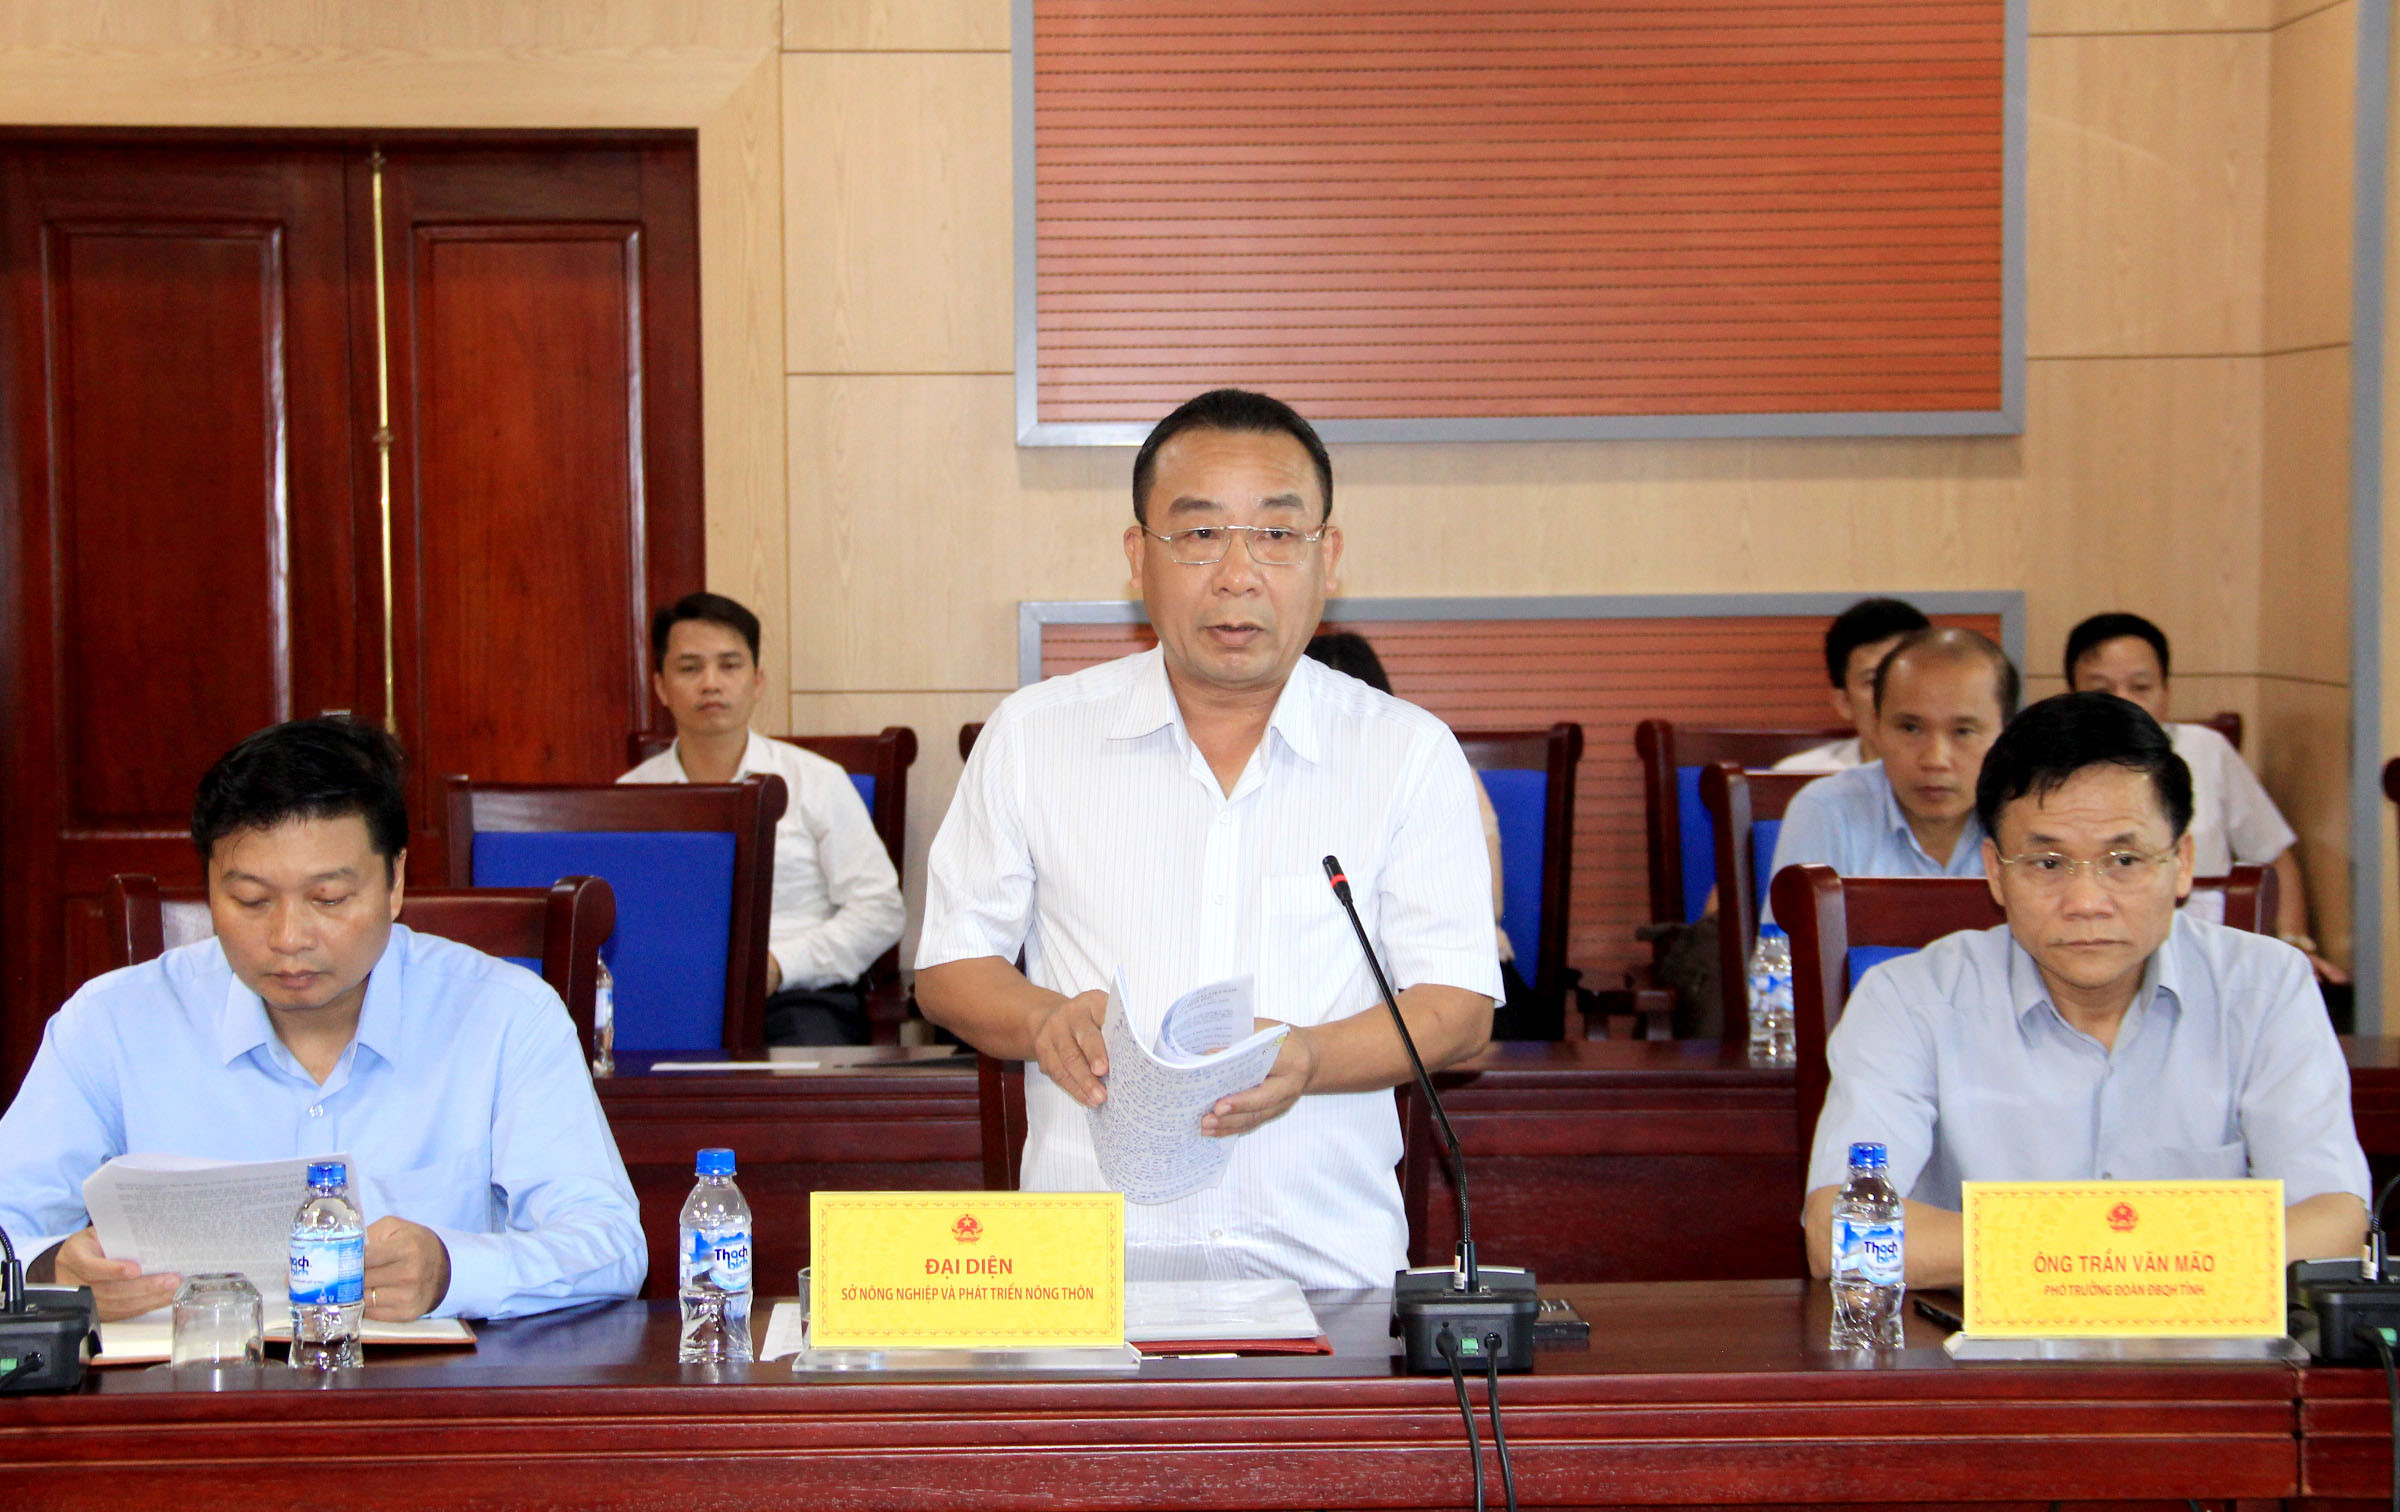 Ông Nguyễn Văn Đệ - Giám đốc Sở NN&PTNT đã báo cáo giải trình về sai phạm tại các Ban quản lý rừng phòng hộ trên địa bàn tỉnh trong thời gian qua. Ảnh: Phạm Bằng